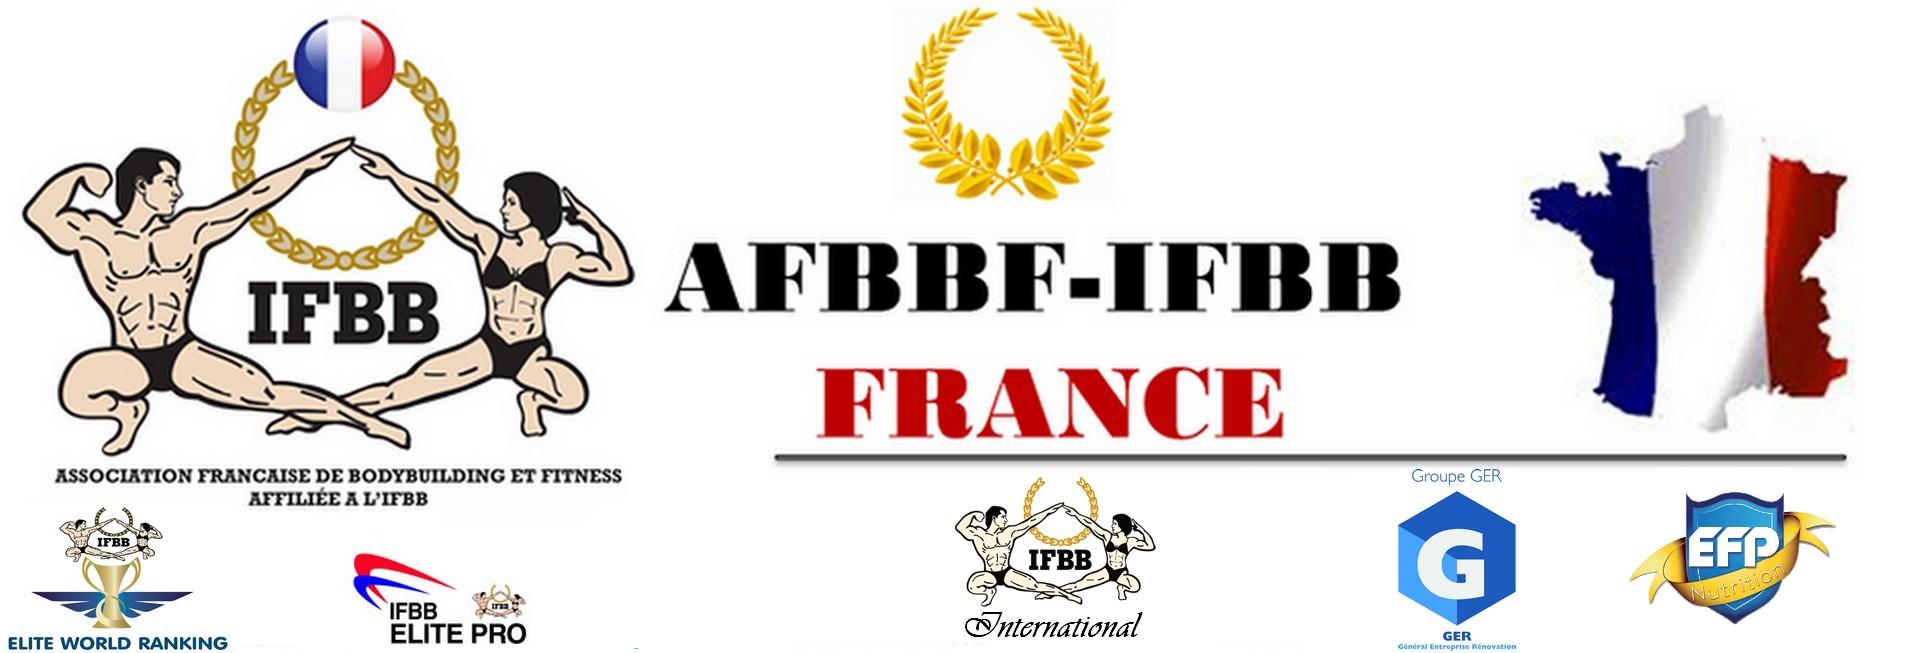 IFBB FRANCE OFFICIEL